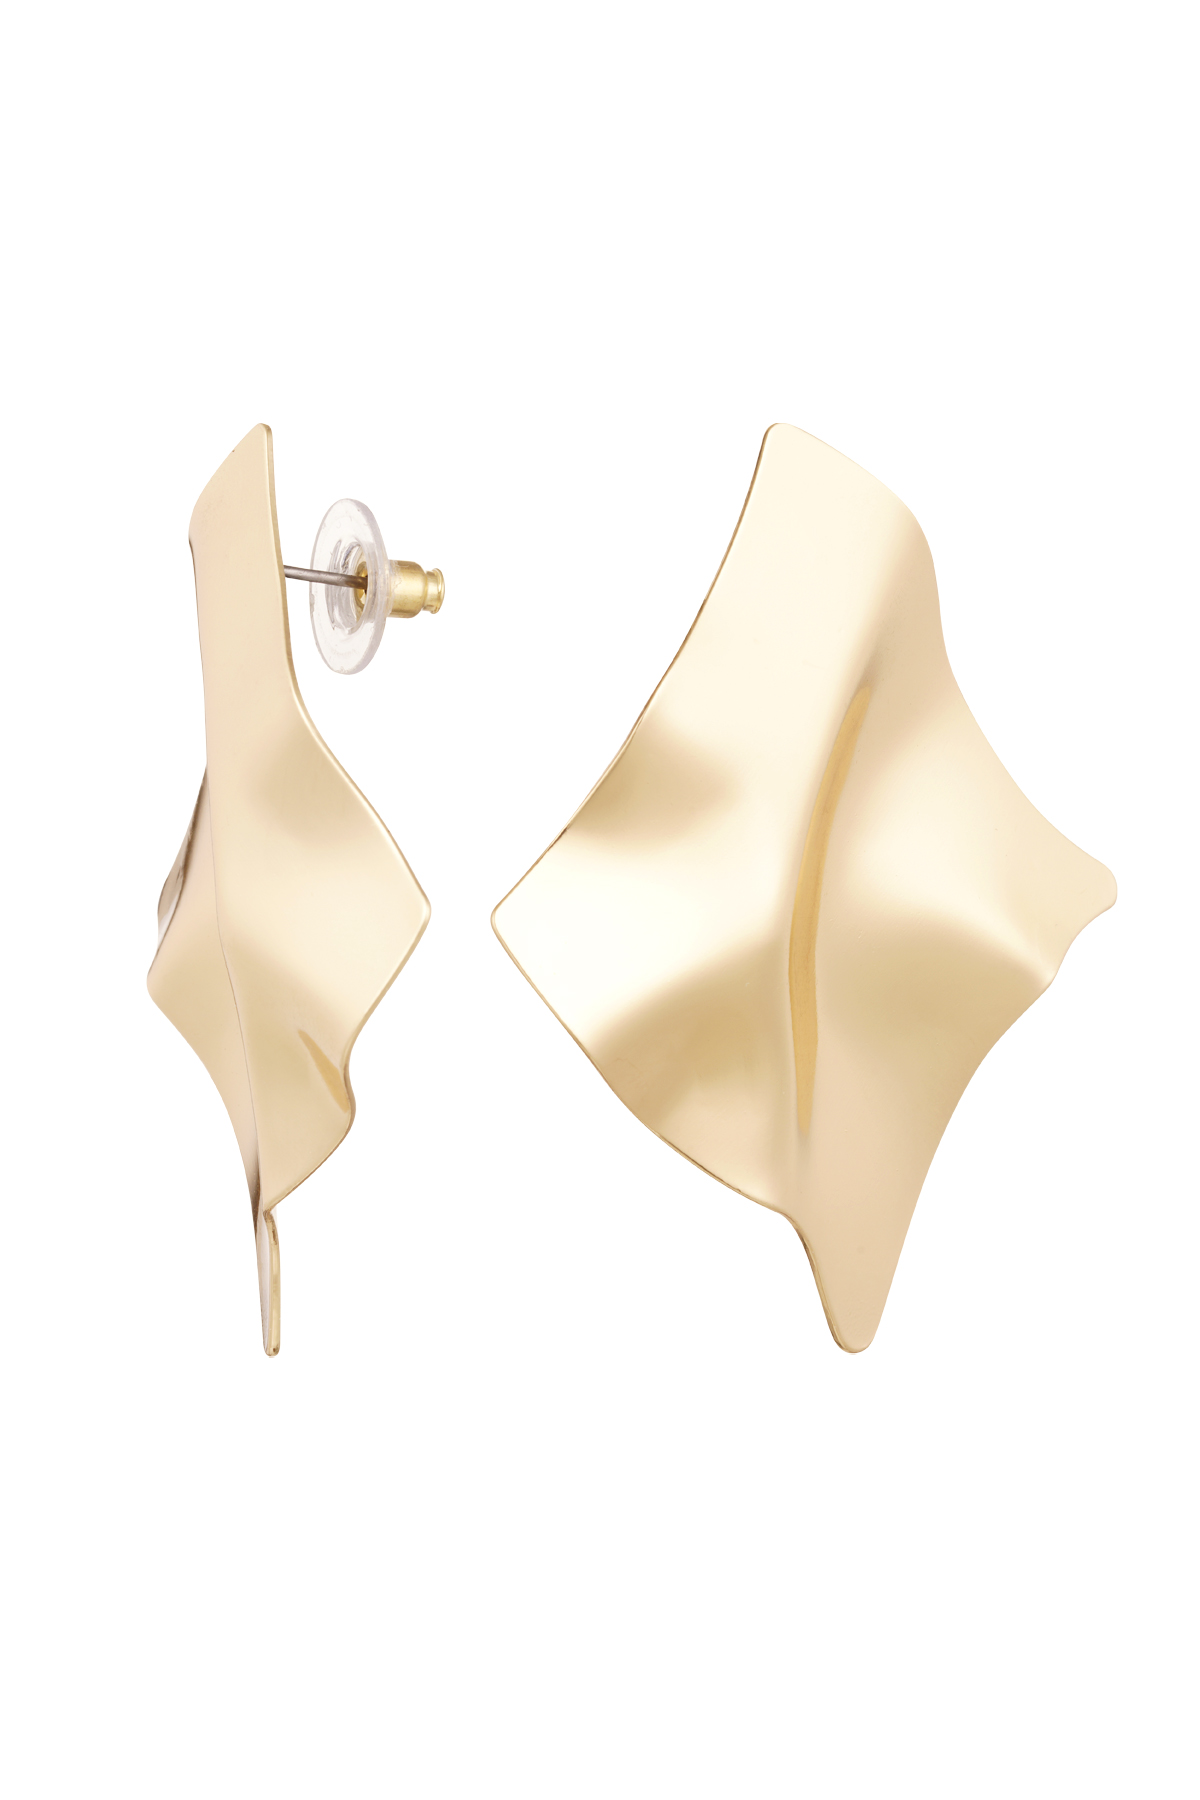 Ohrringe asymmetrische Form – Gold